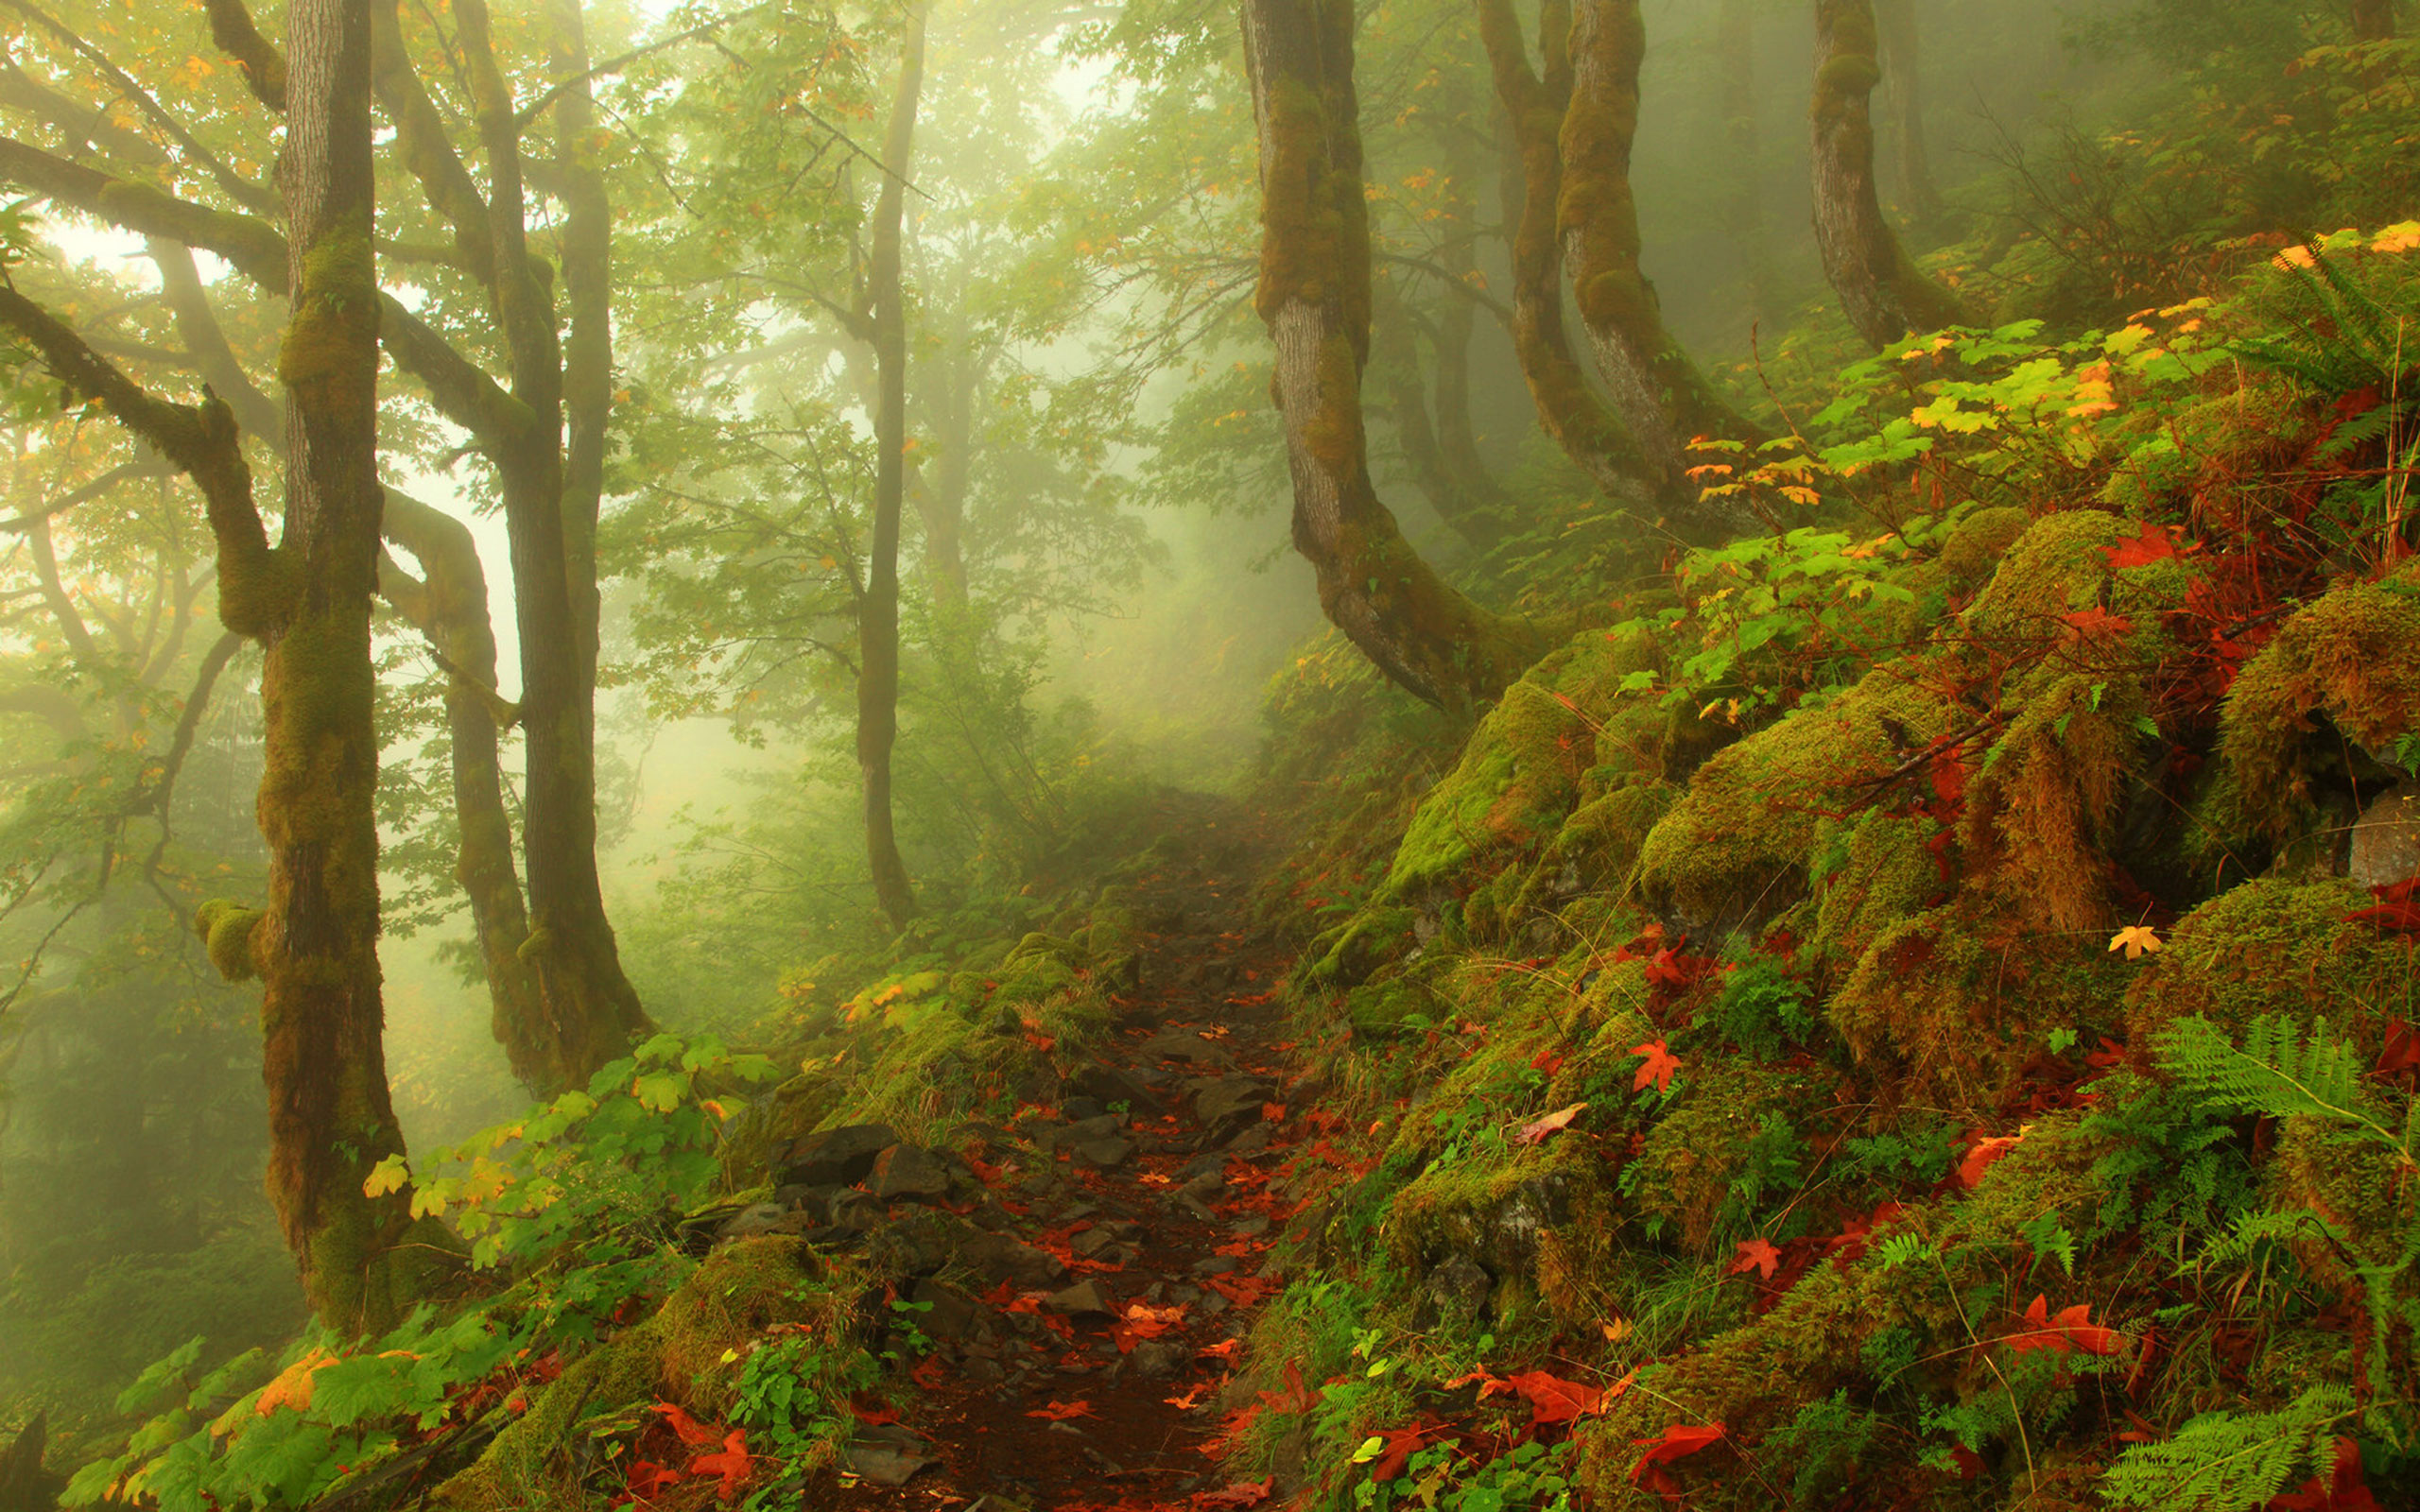 Download mobile wallpaper Landscape, Forest, Fog, Earth for free.